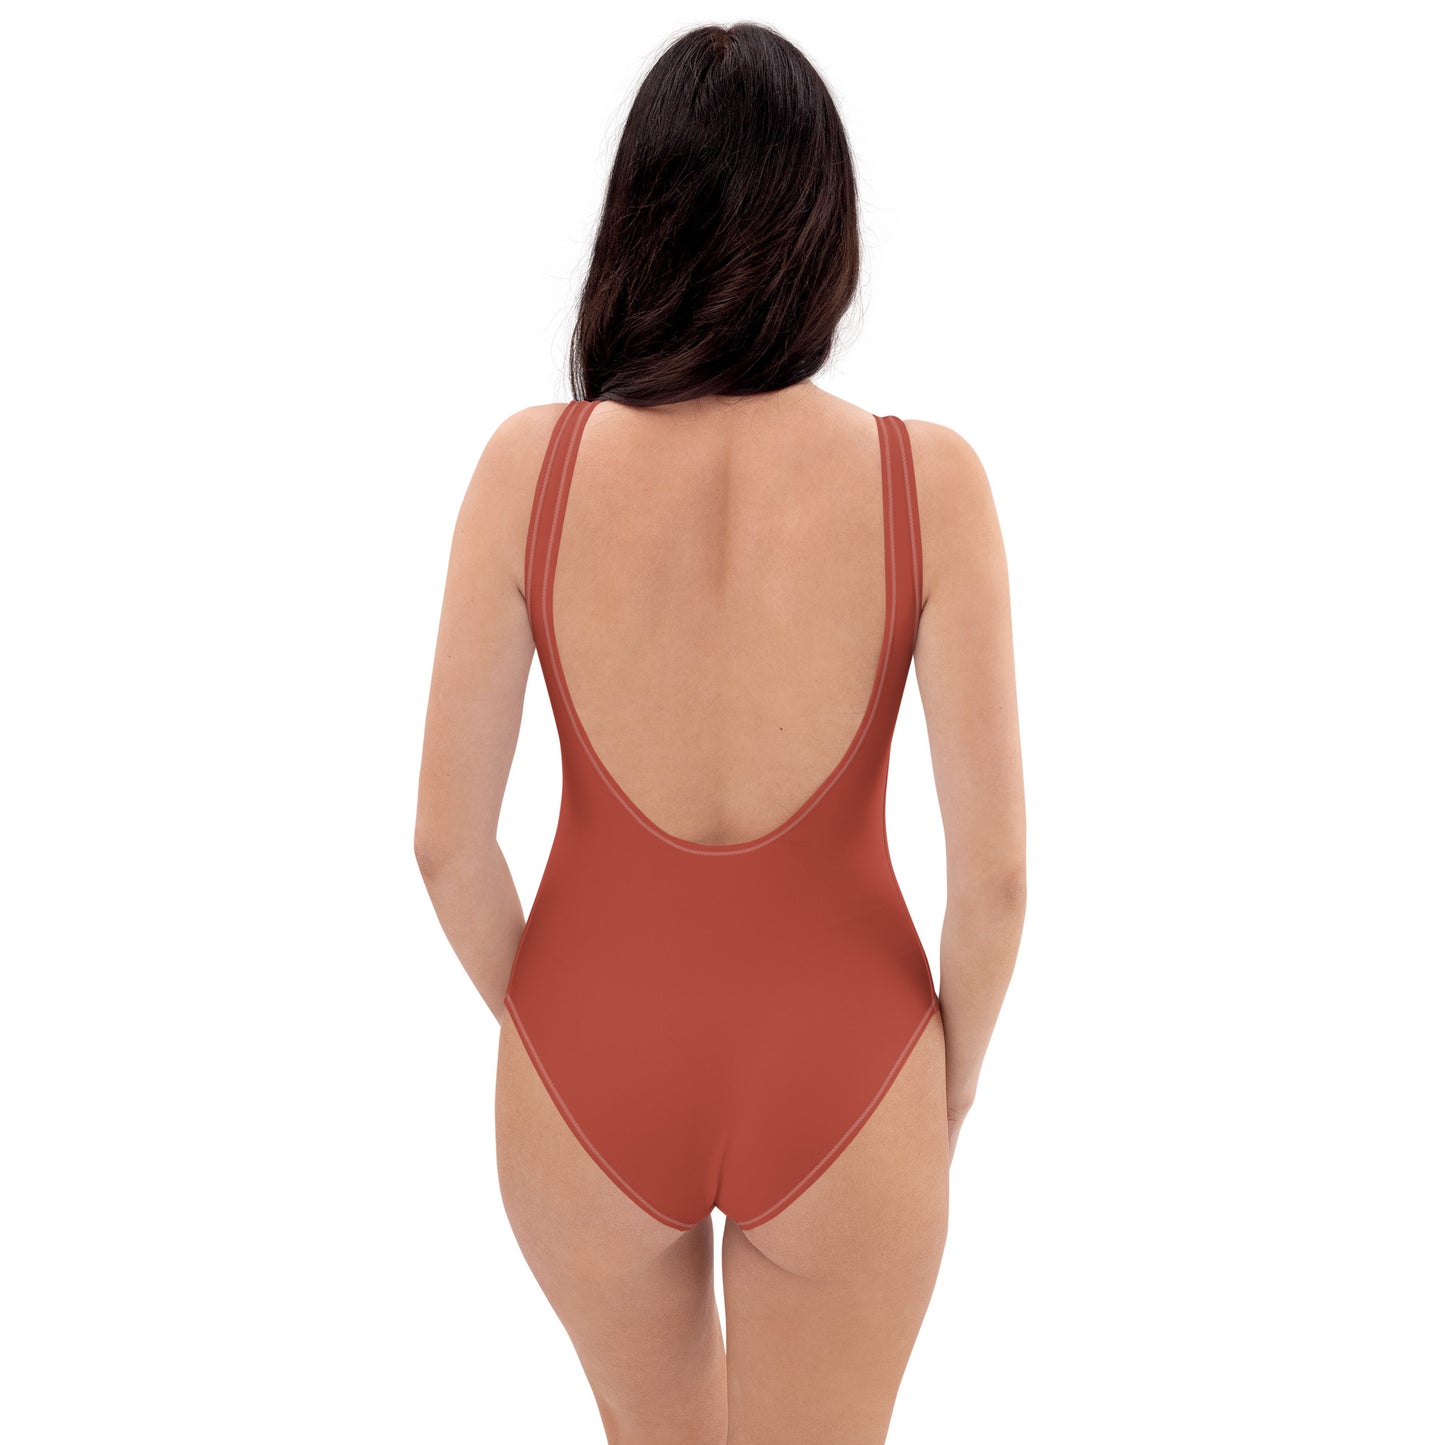 Crimson One-Piece Swimsuit